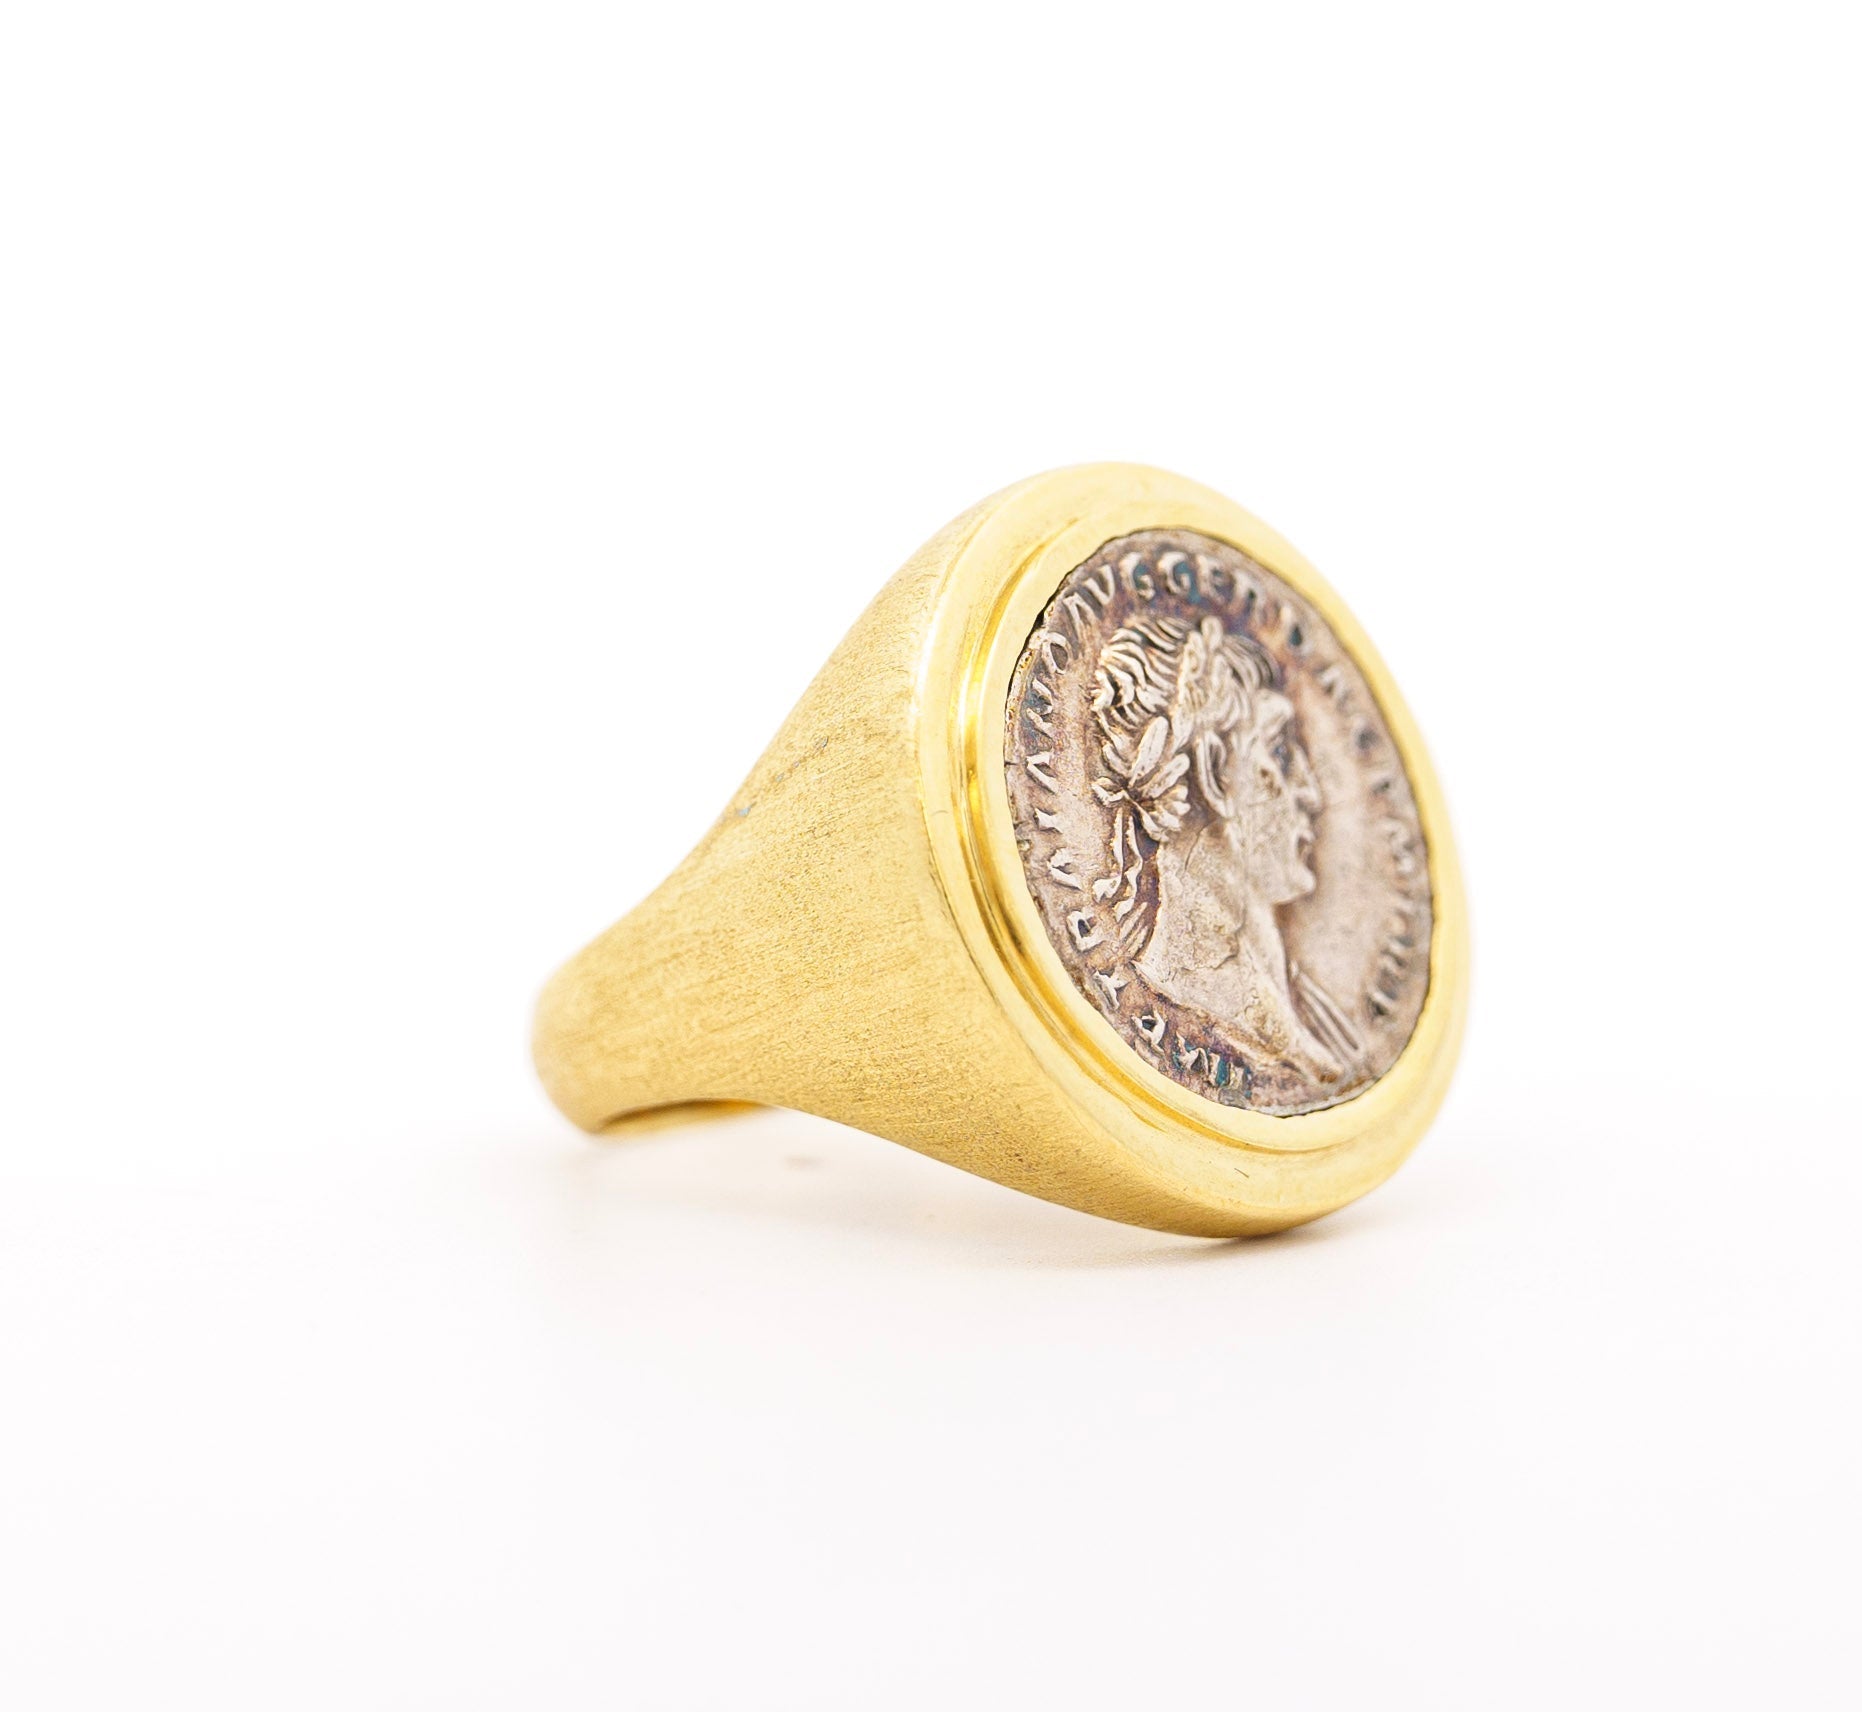 Antique-Roman-Trajan-Dupondius-Coin-Brushed-Gold-Mens-18K-Yellow-Gold-Ring-Rings-2_98886373-4937-402d-9361-dbbd3042d1dc.jpg